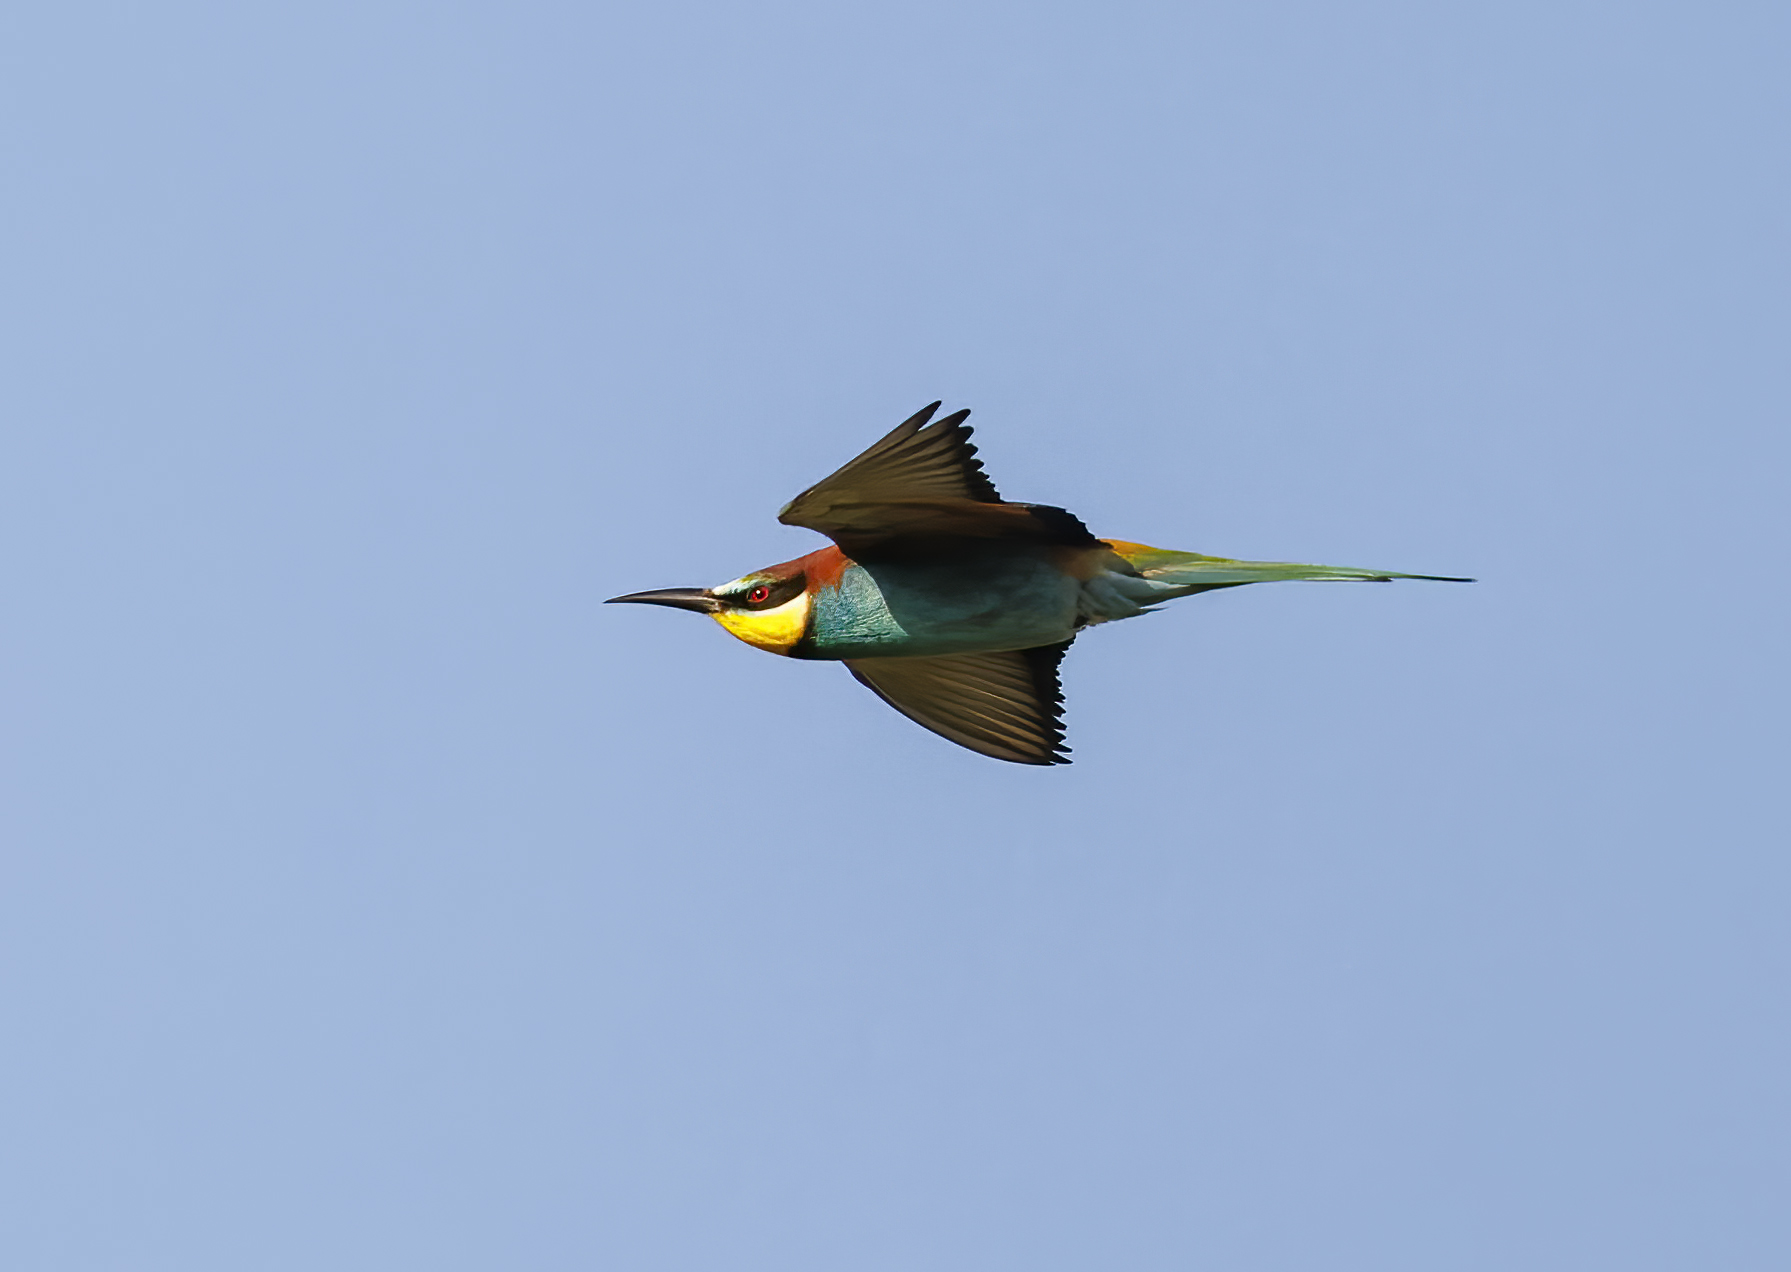 A bee-eater in flight